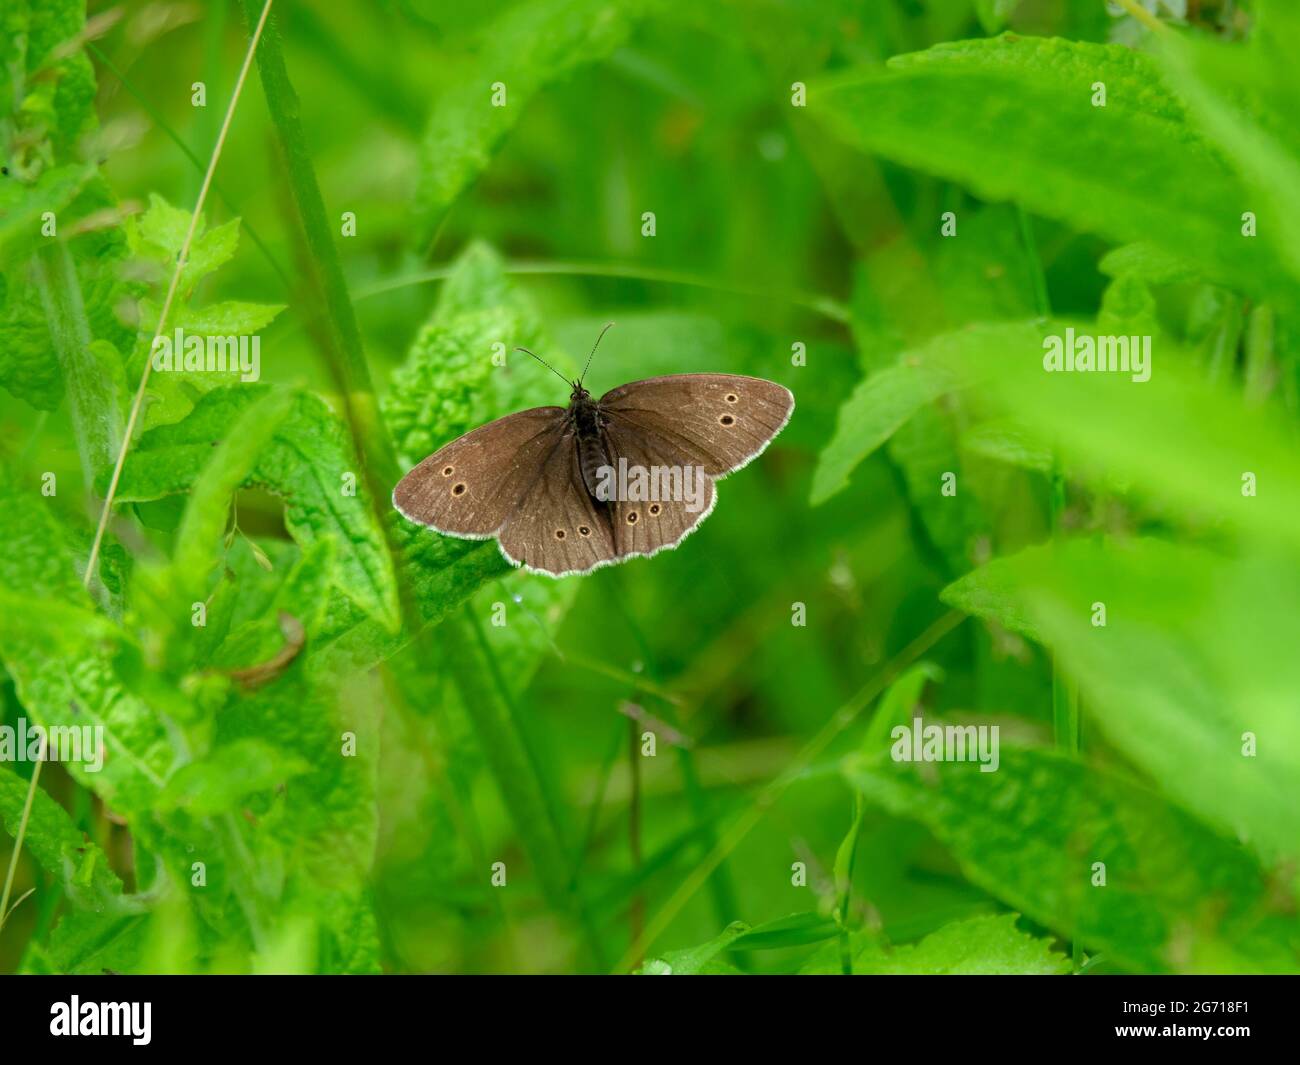 Mariposa de ringlet con alas abiertas entre hojas verdes Foto de stock